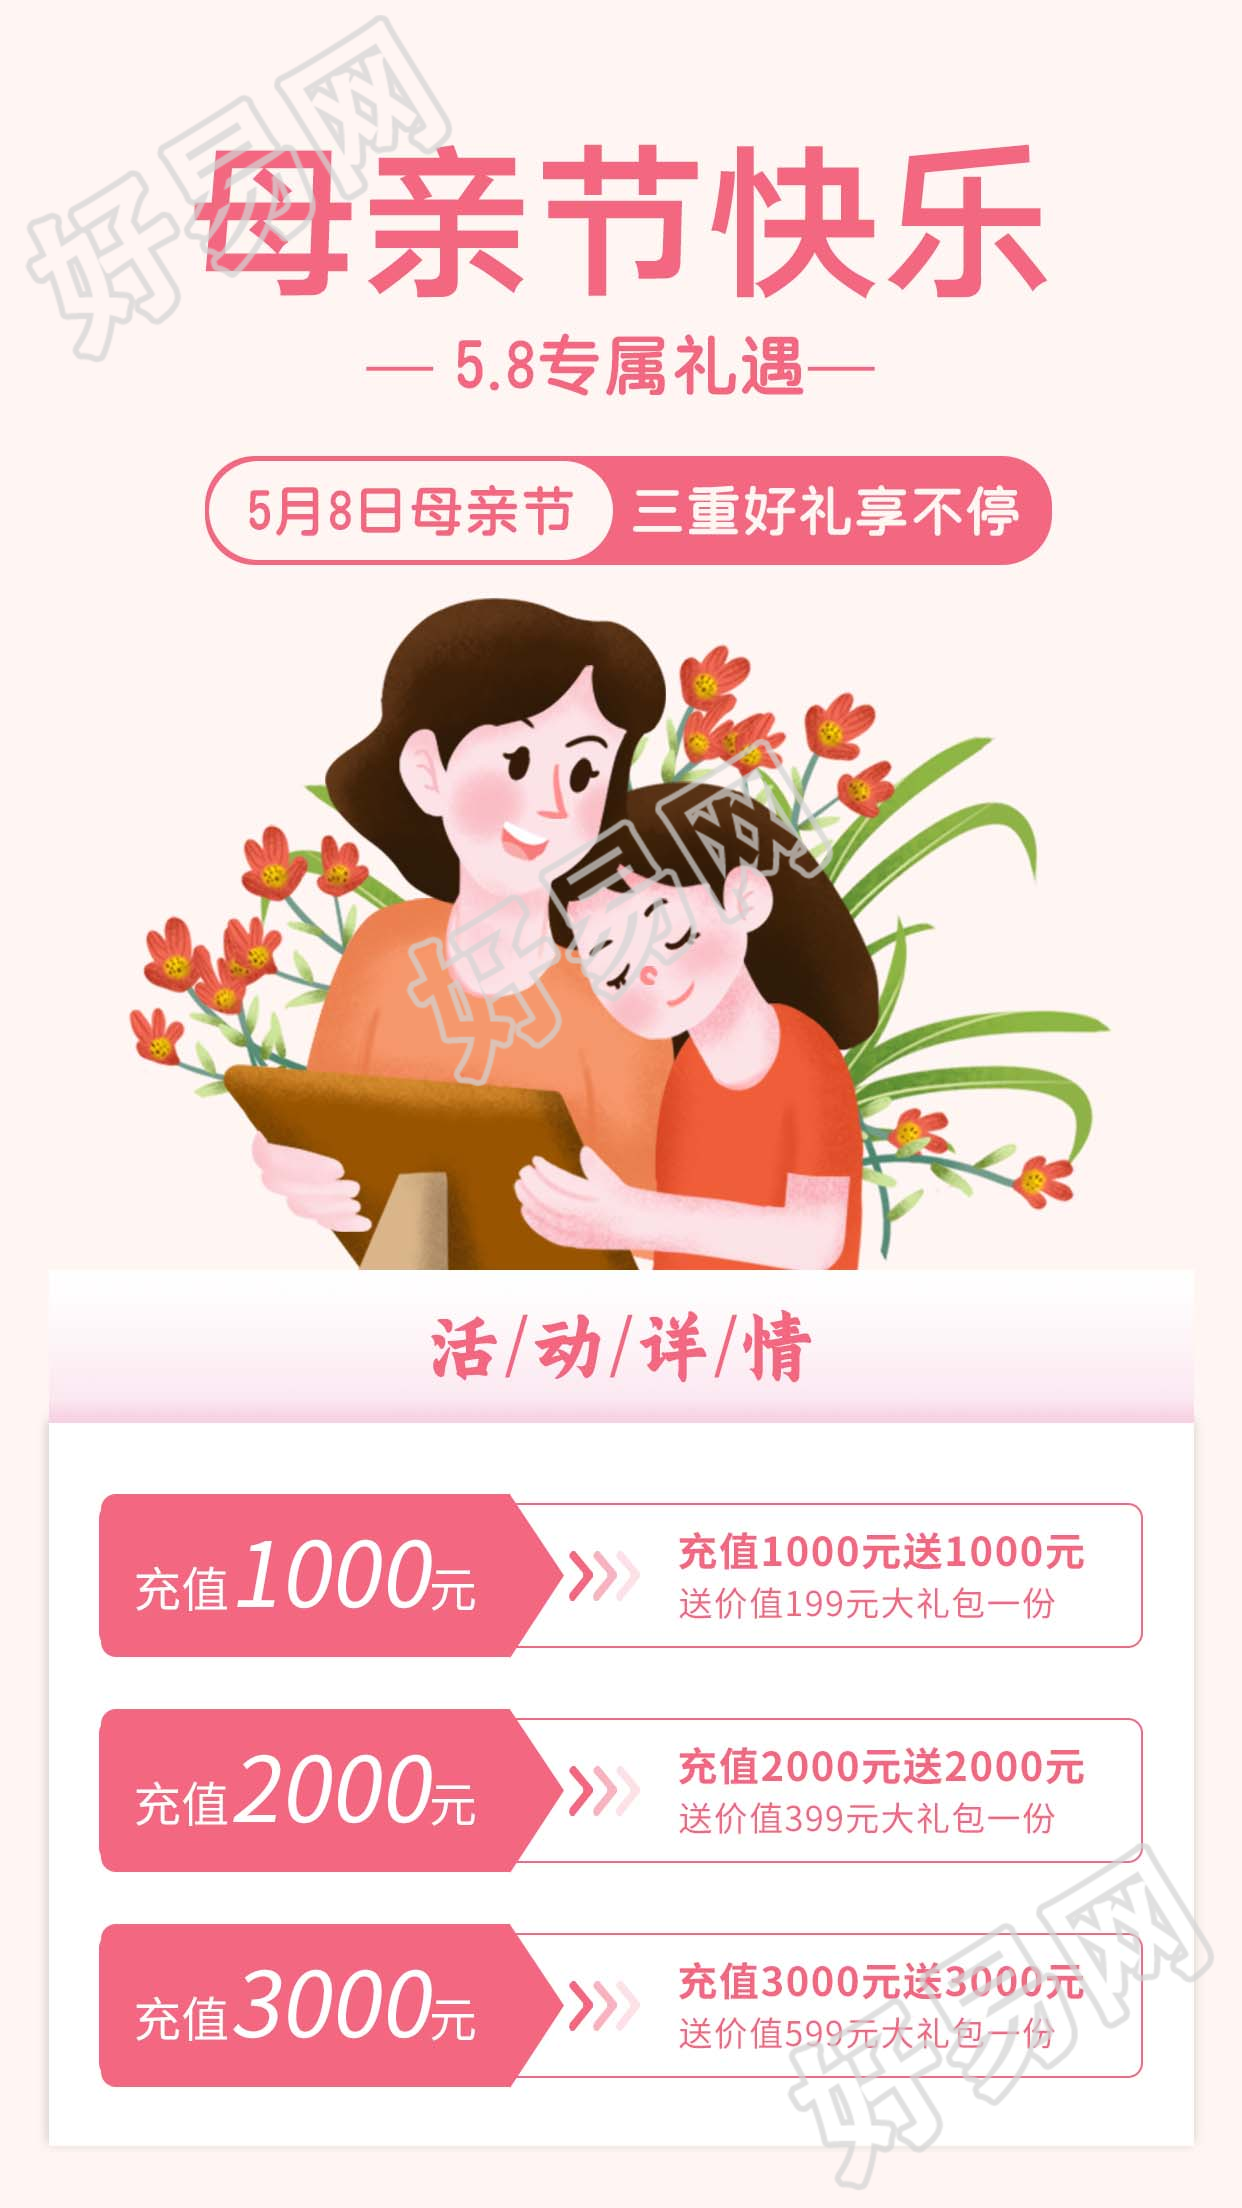 5.8感恩母亲节营销宣传活动图片手机海报